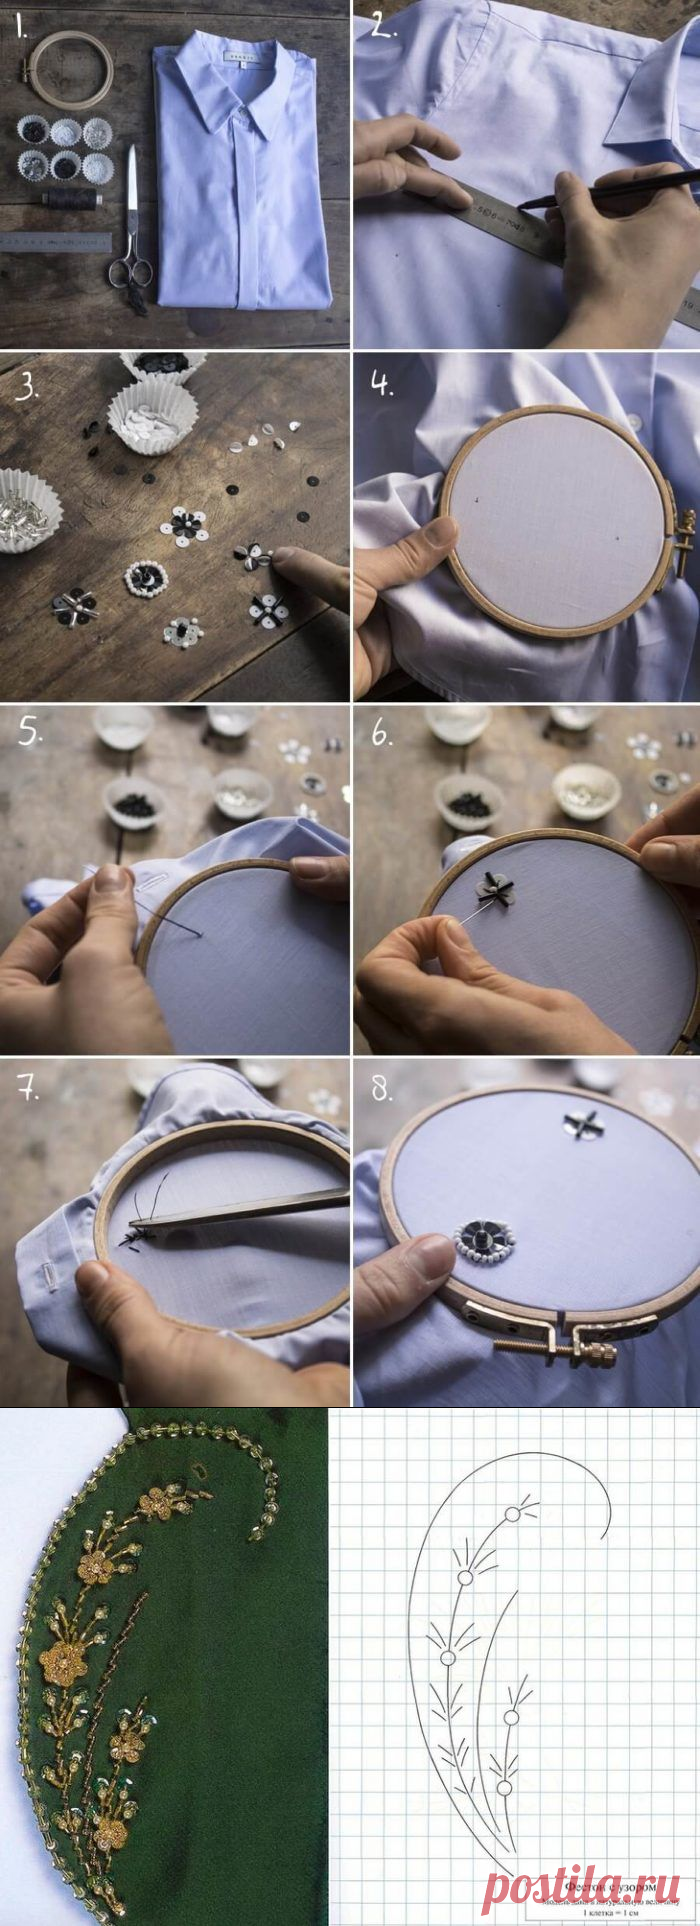 Вышивка на одежде бисером: схемы и фото идеи